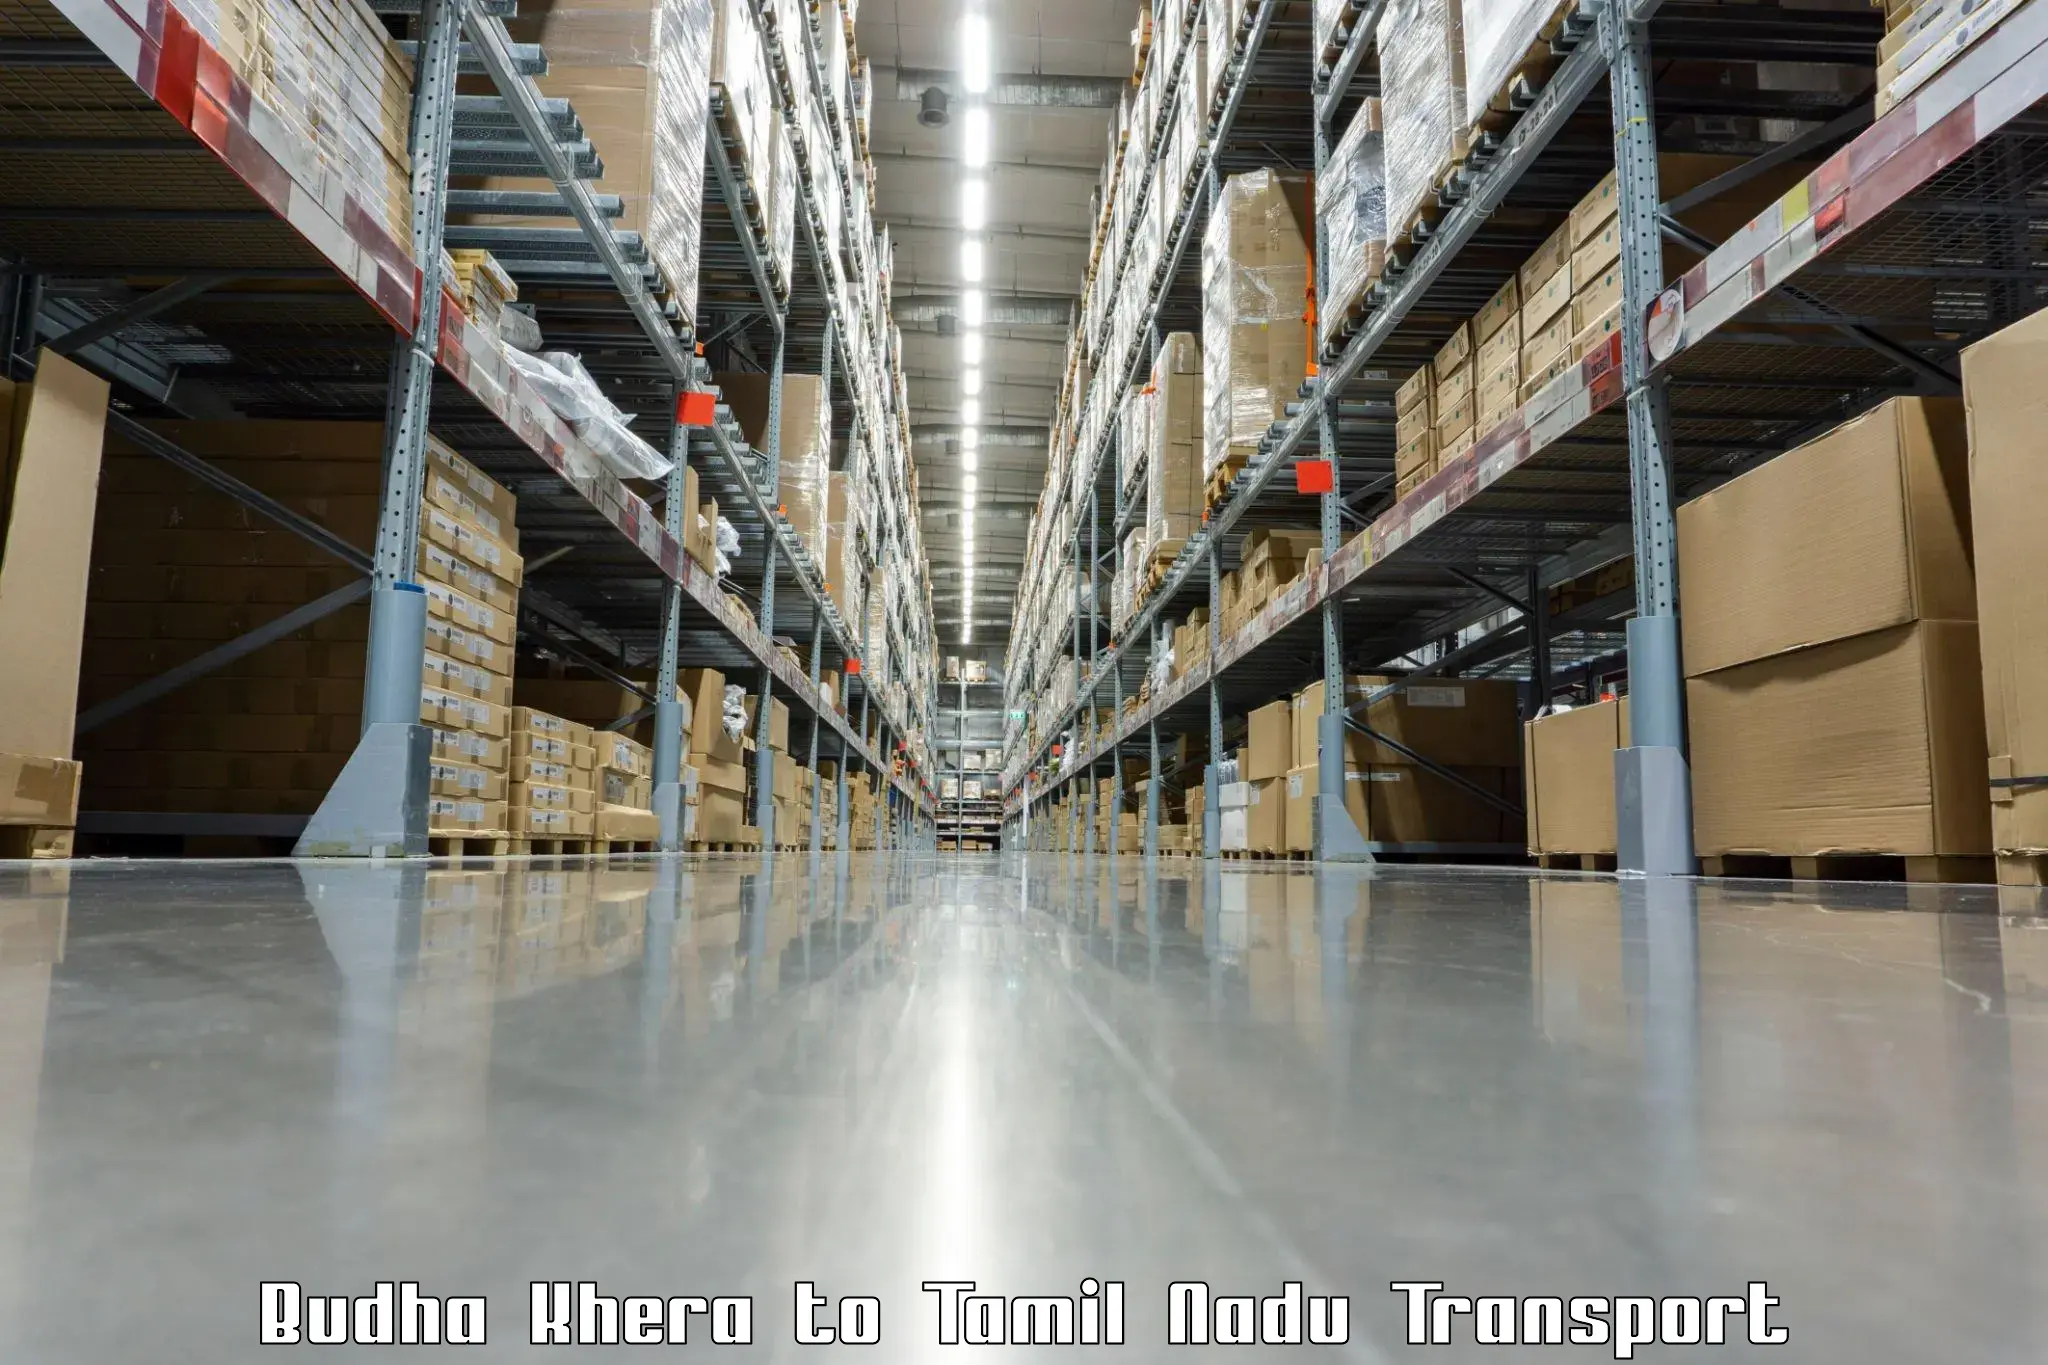 Truck transport companies in India in Budha Khera to Amrita Vishwa Vidyapeetham Coimbatore